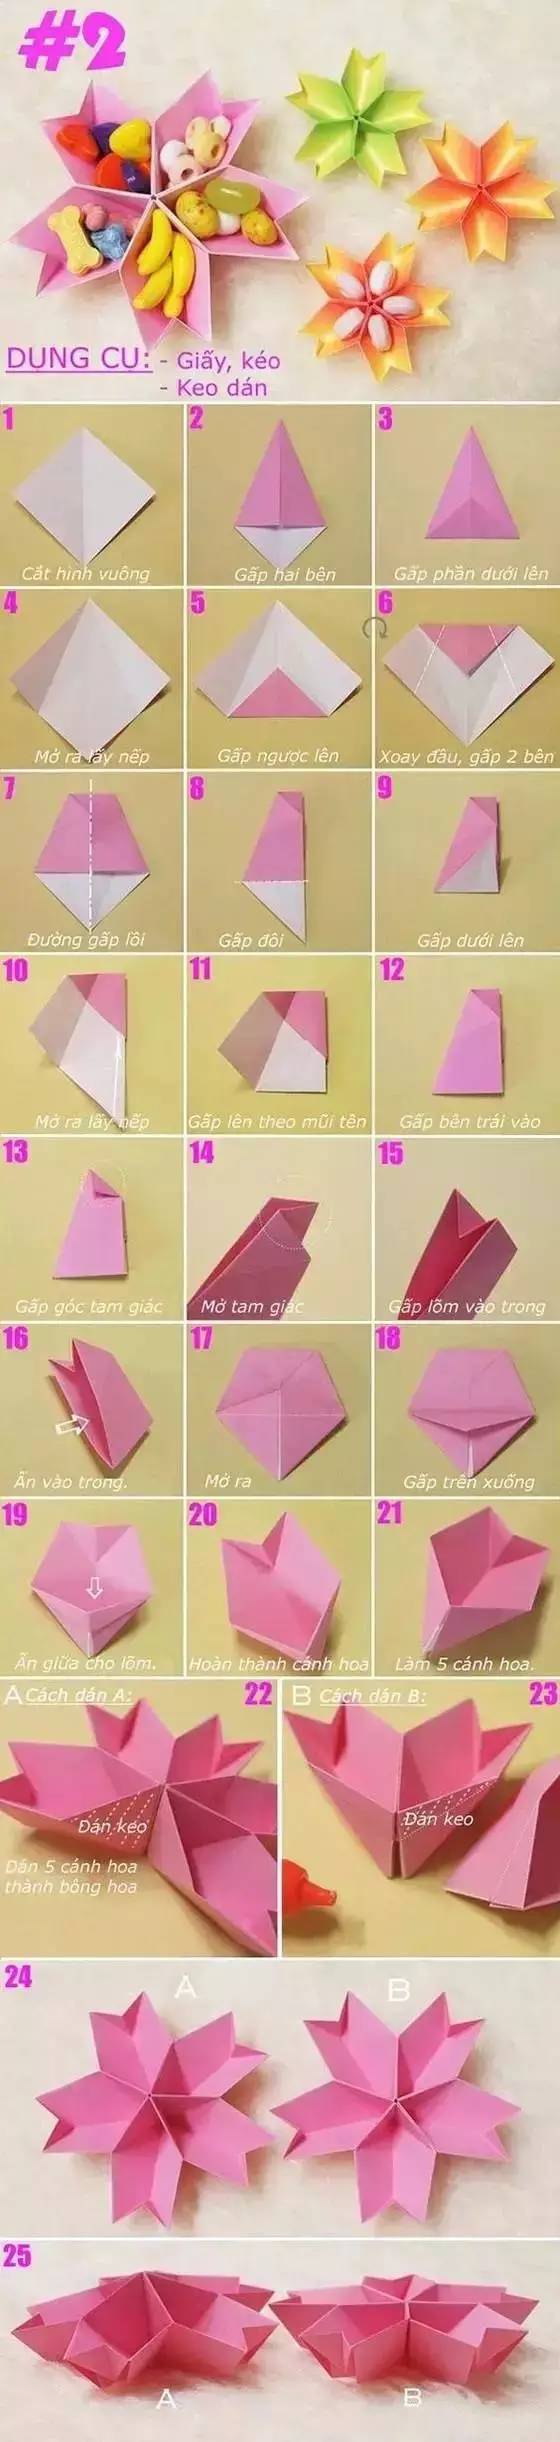 怎样折纸简单又漂亮图片